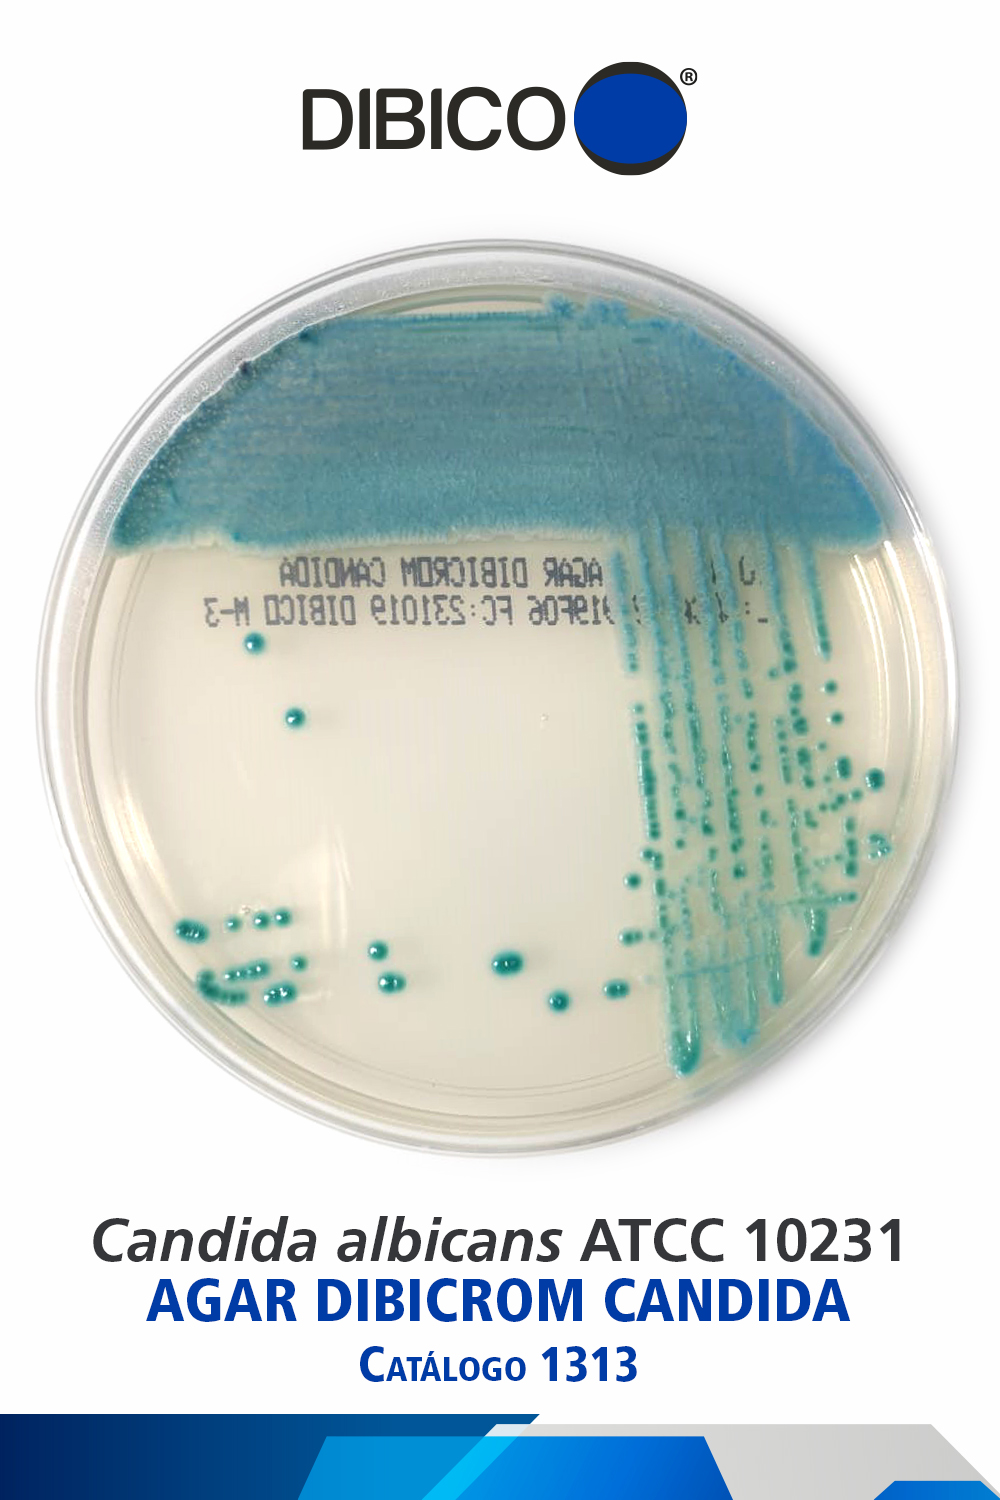 Candida albicans ATCC 10231 cat 1313